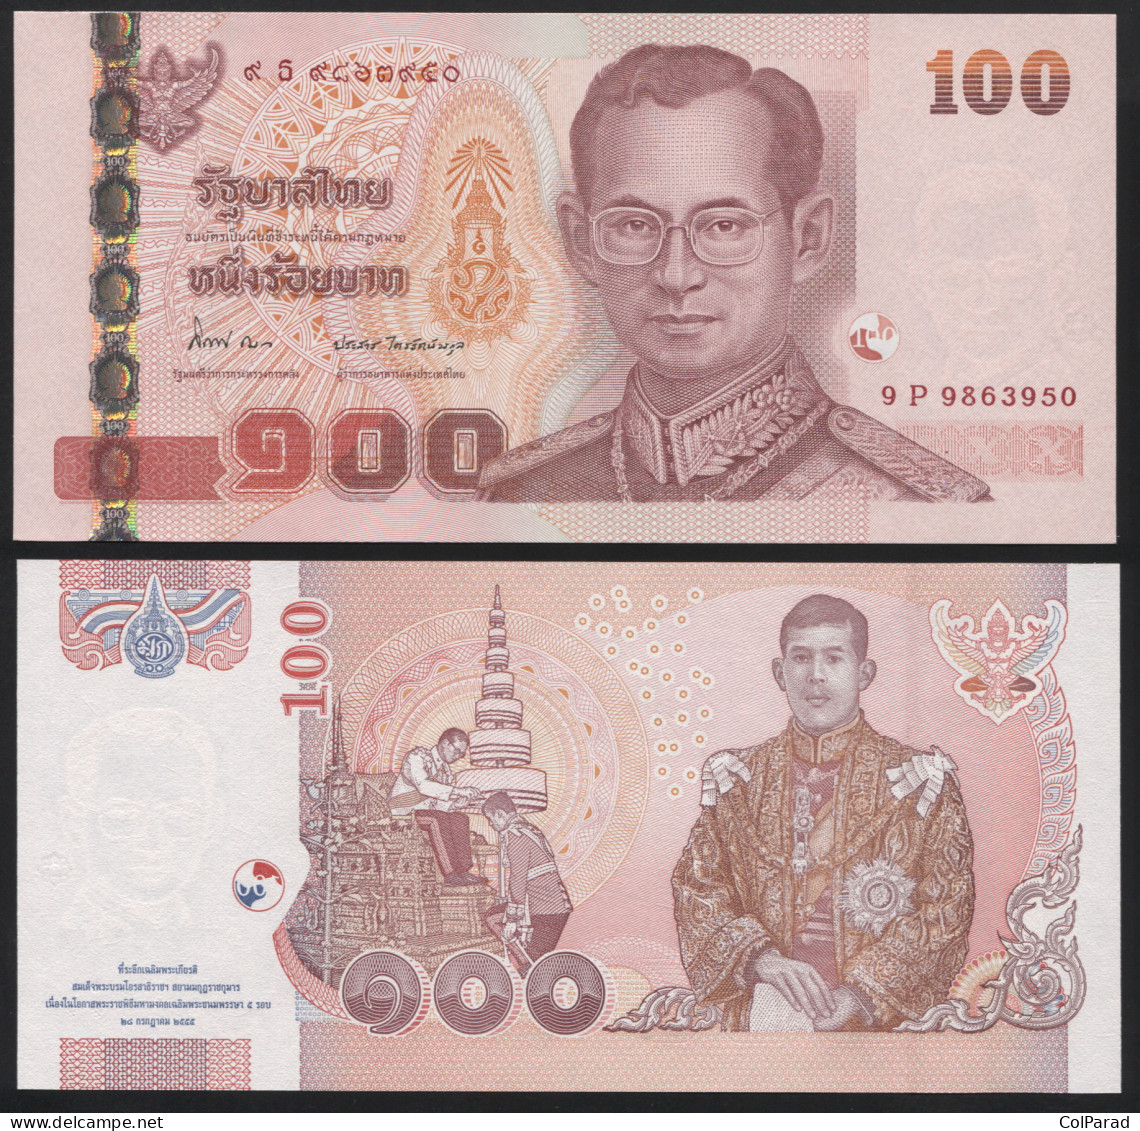 THAILAND 100 BAHT - BE2555 (2012) - Unc - P.126a Paper Banknote - Thaïlande